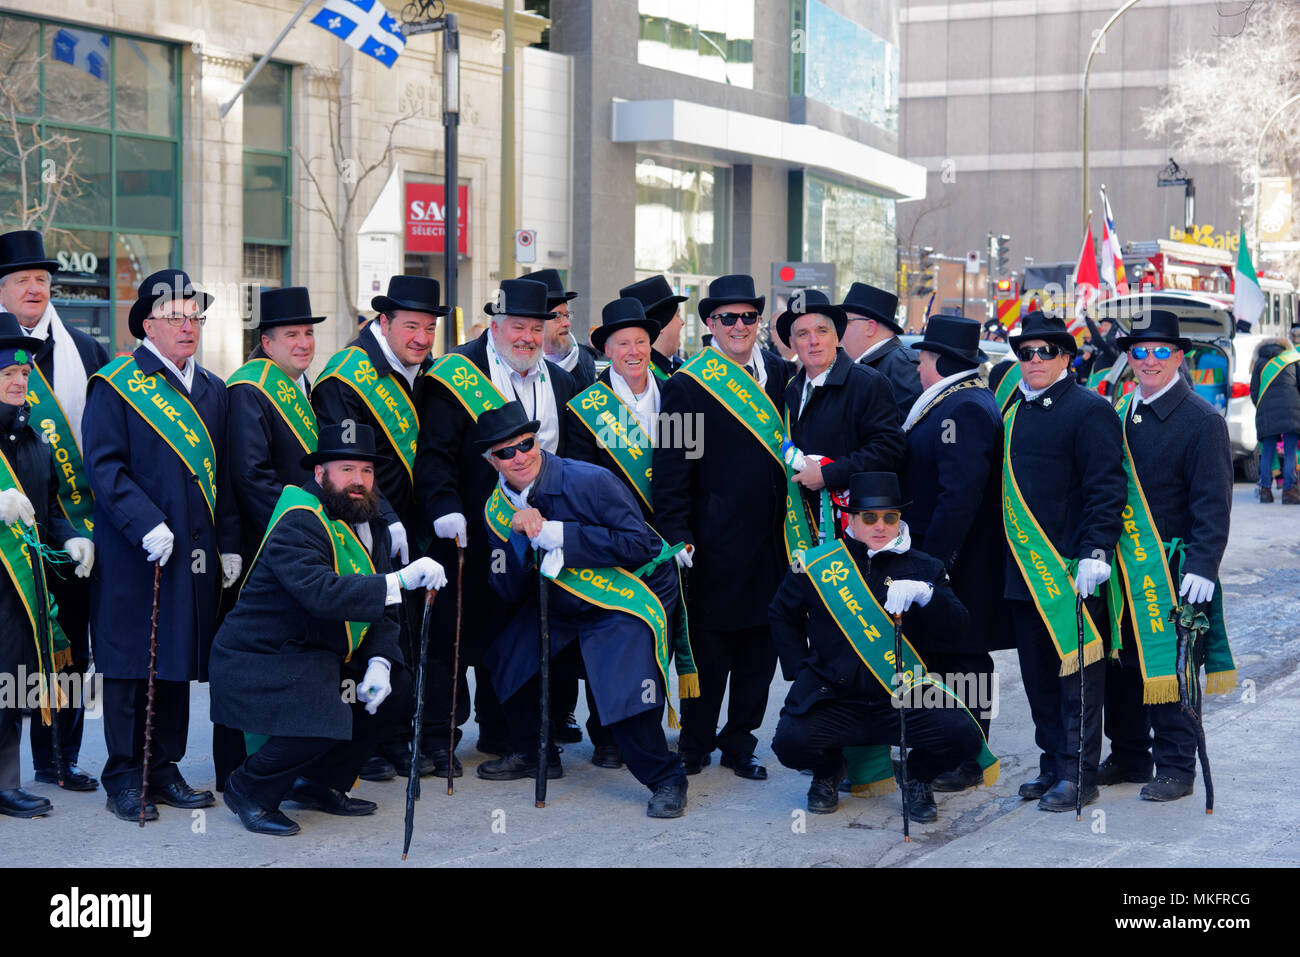 Los miembros de la Asociación de Deportes de Erin posan para una foto en el Desfile del Día de San Patricio en Montreal Foto de stock